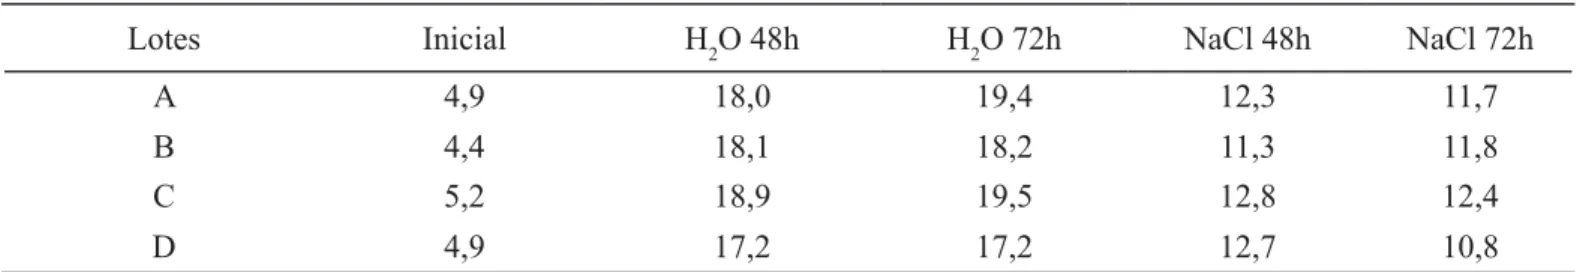 TABELA  2.  Teores  de  água  (%)  inicial  e  após  os  períodos  de  envelhecimento  acelerado  tradicional  (H2O)  e  com  solução salina (NaCl) das sementes de quatro lotes de mogango